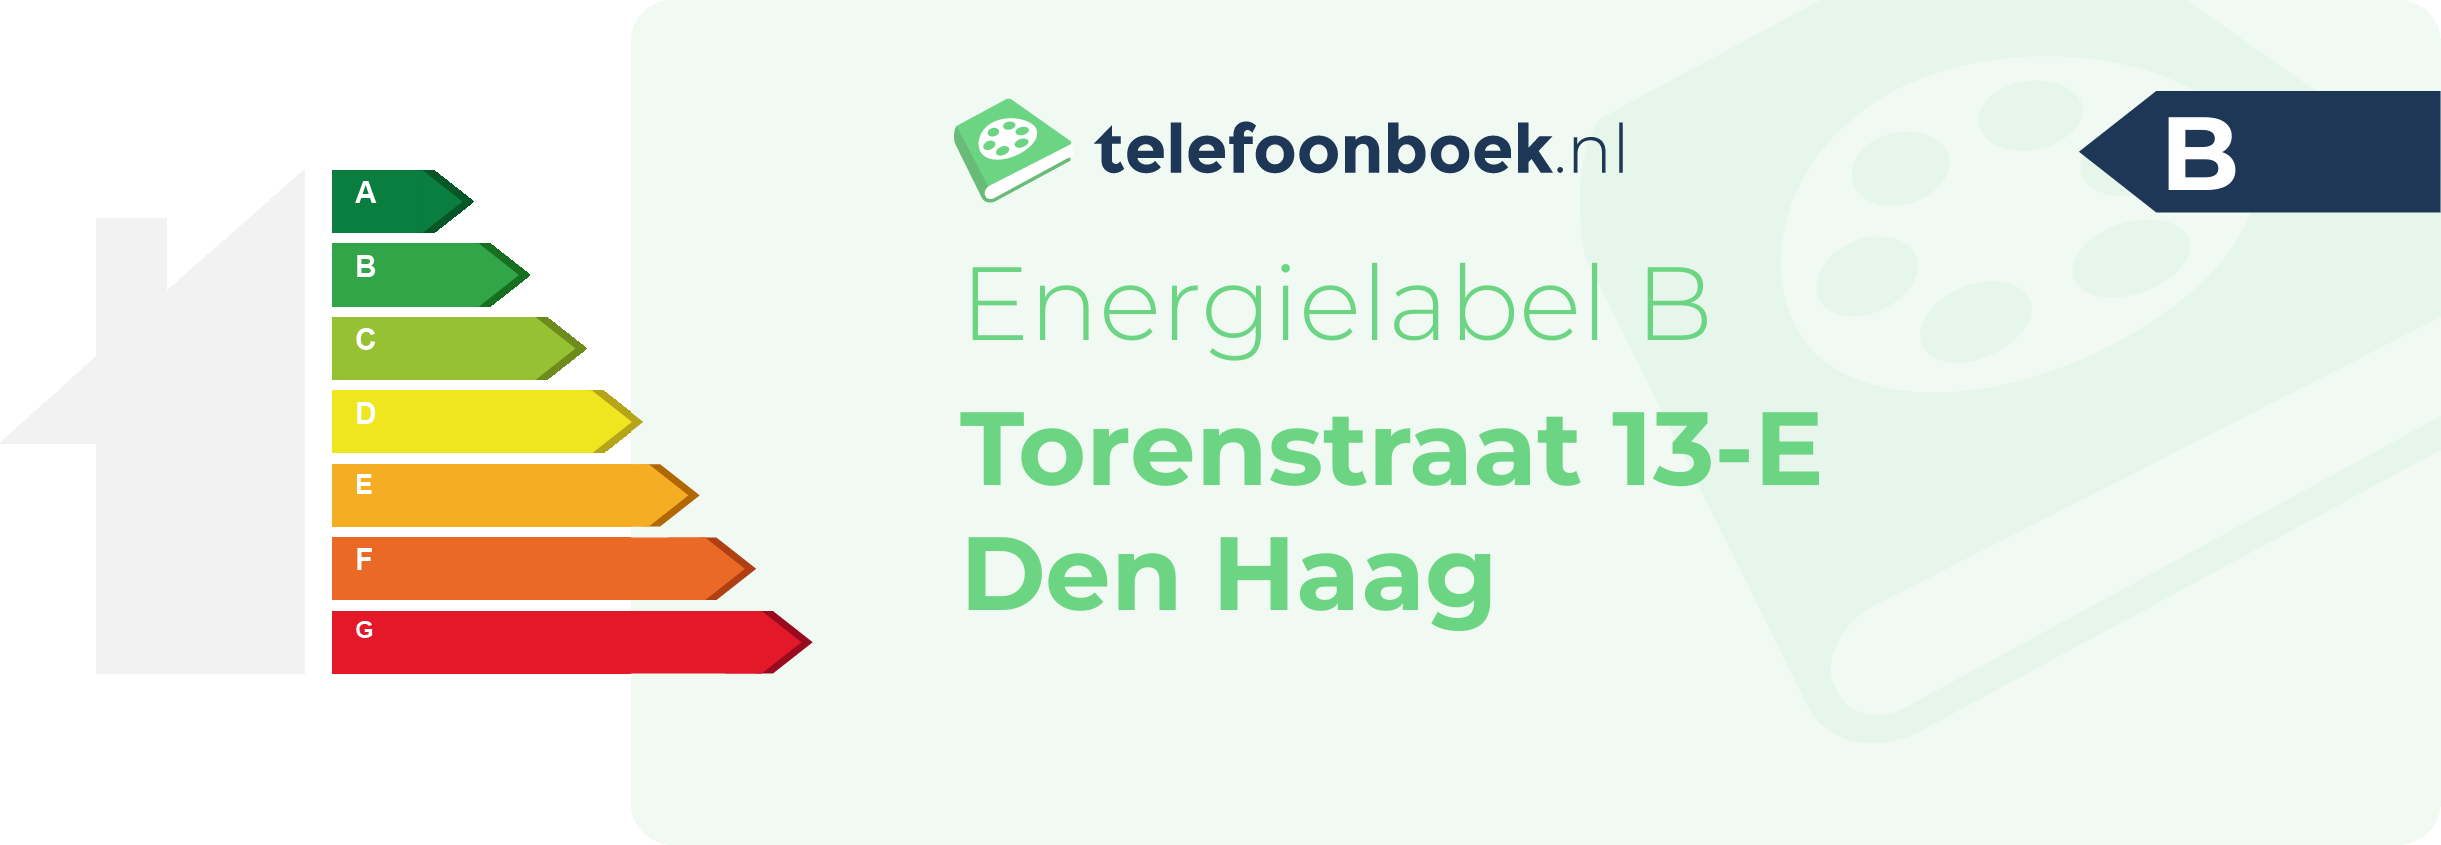 Energielabel Torenstraat 13-E Den Haag